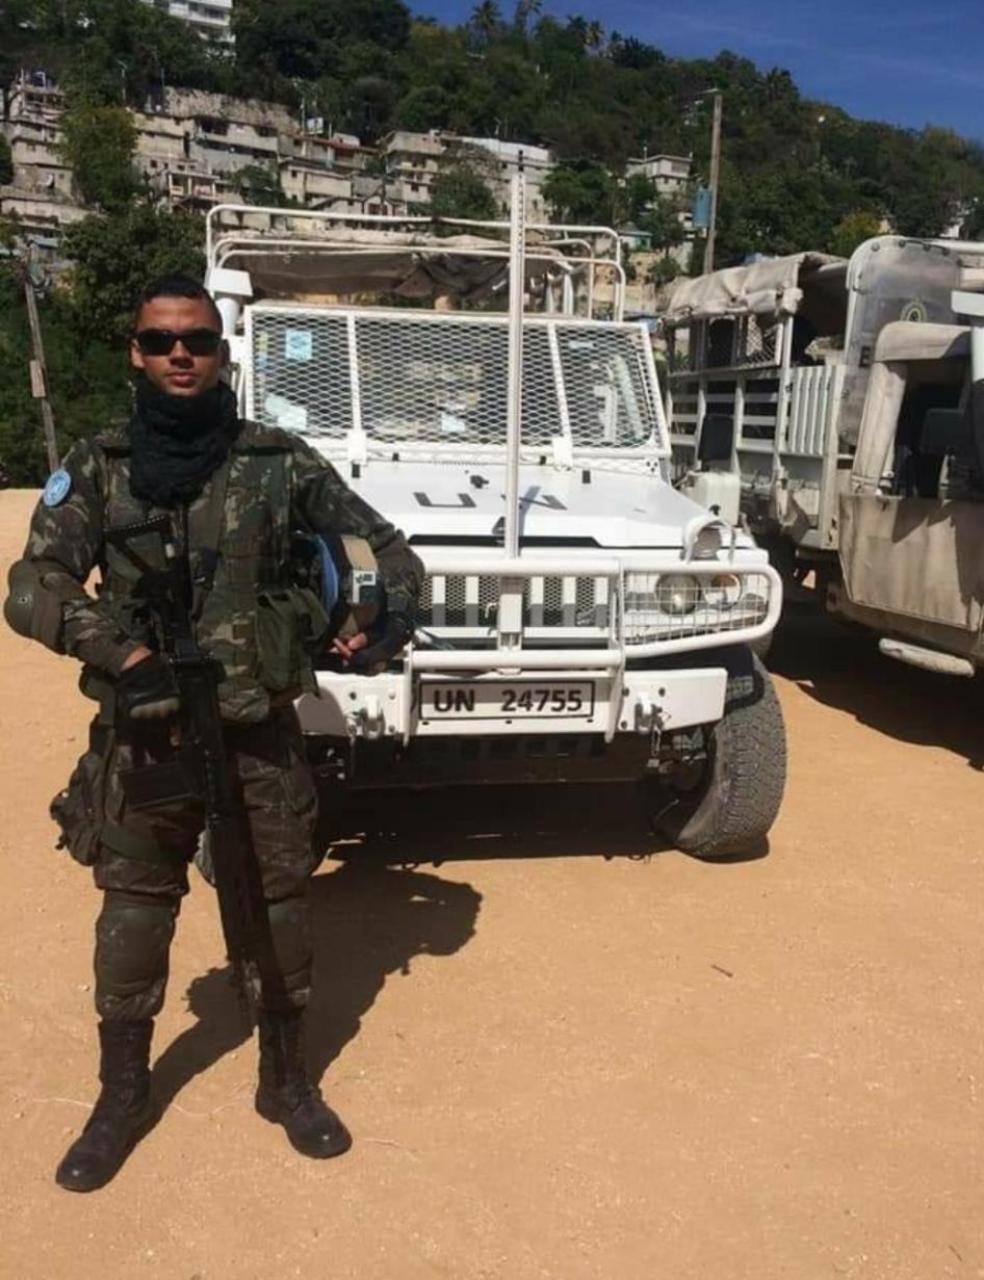 Brasileiro que é soldado do Exército de Israel revela rotina